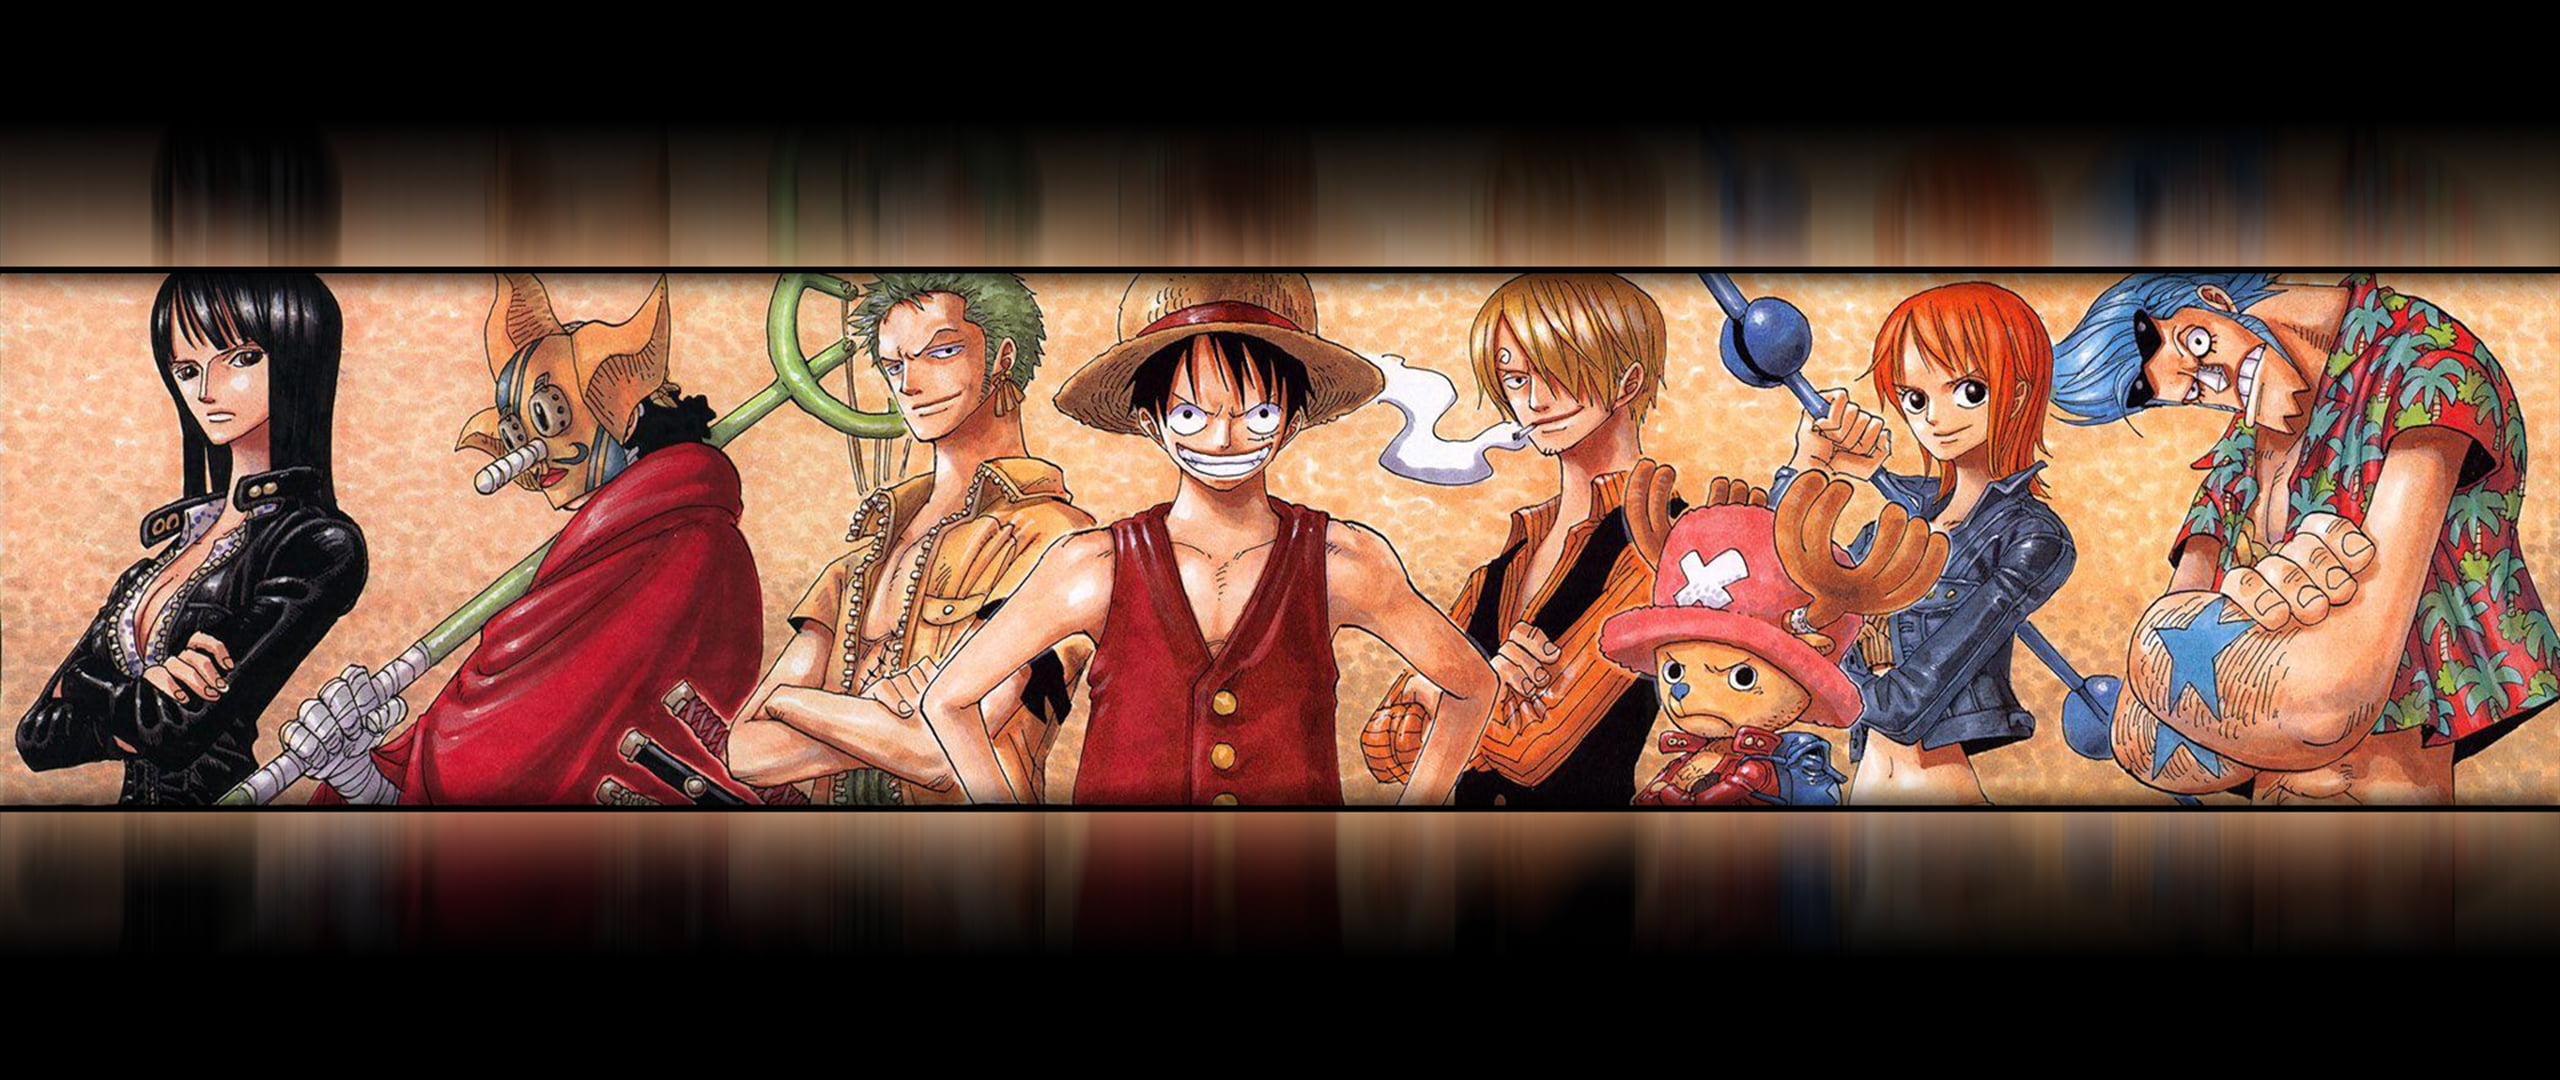 One Piece: Hãy đắm mình trong thế giới đầy phiêu lưu và hài hước của bộ truyện tranh nổi tiếng One Piece. Tận hưởng một cuộc hành trình tuyệt vời với những nhân vật đầy cảm xúc và tính cách độc đáo. Xem hình ảnh liên quan để cảm nhận tình cảm đặc biệt này.